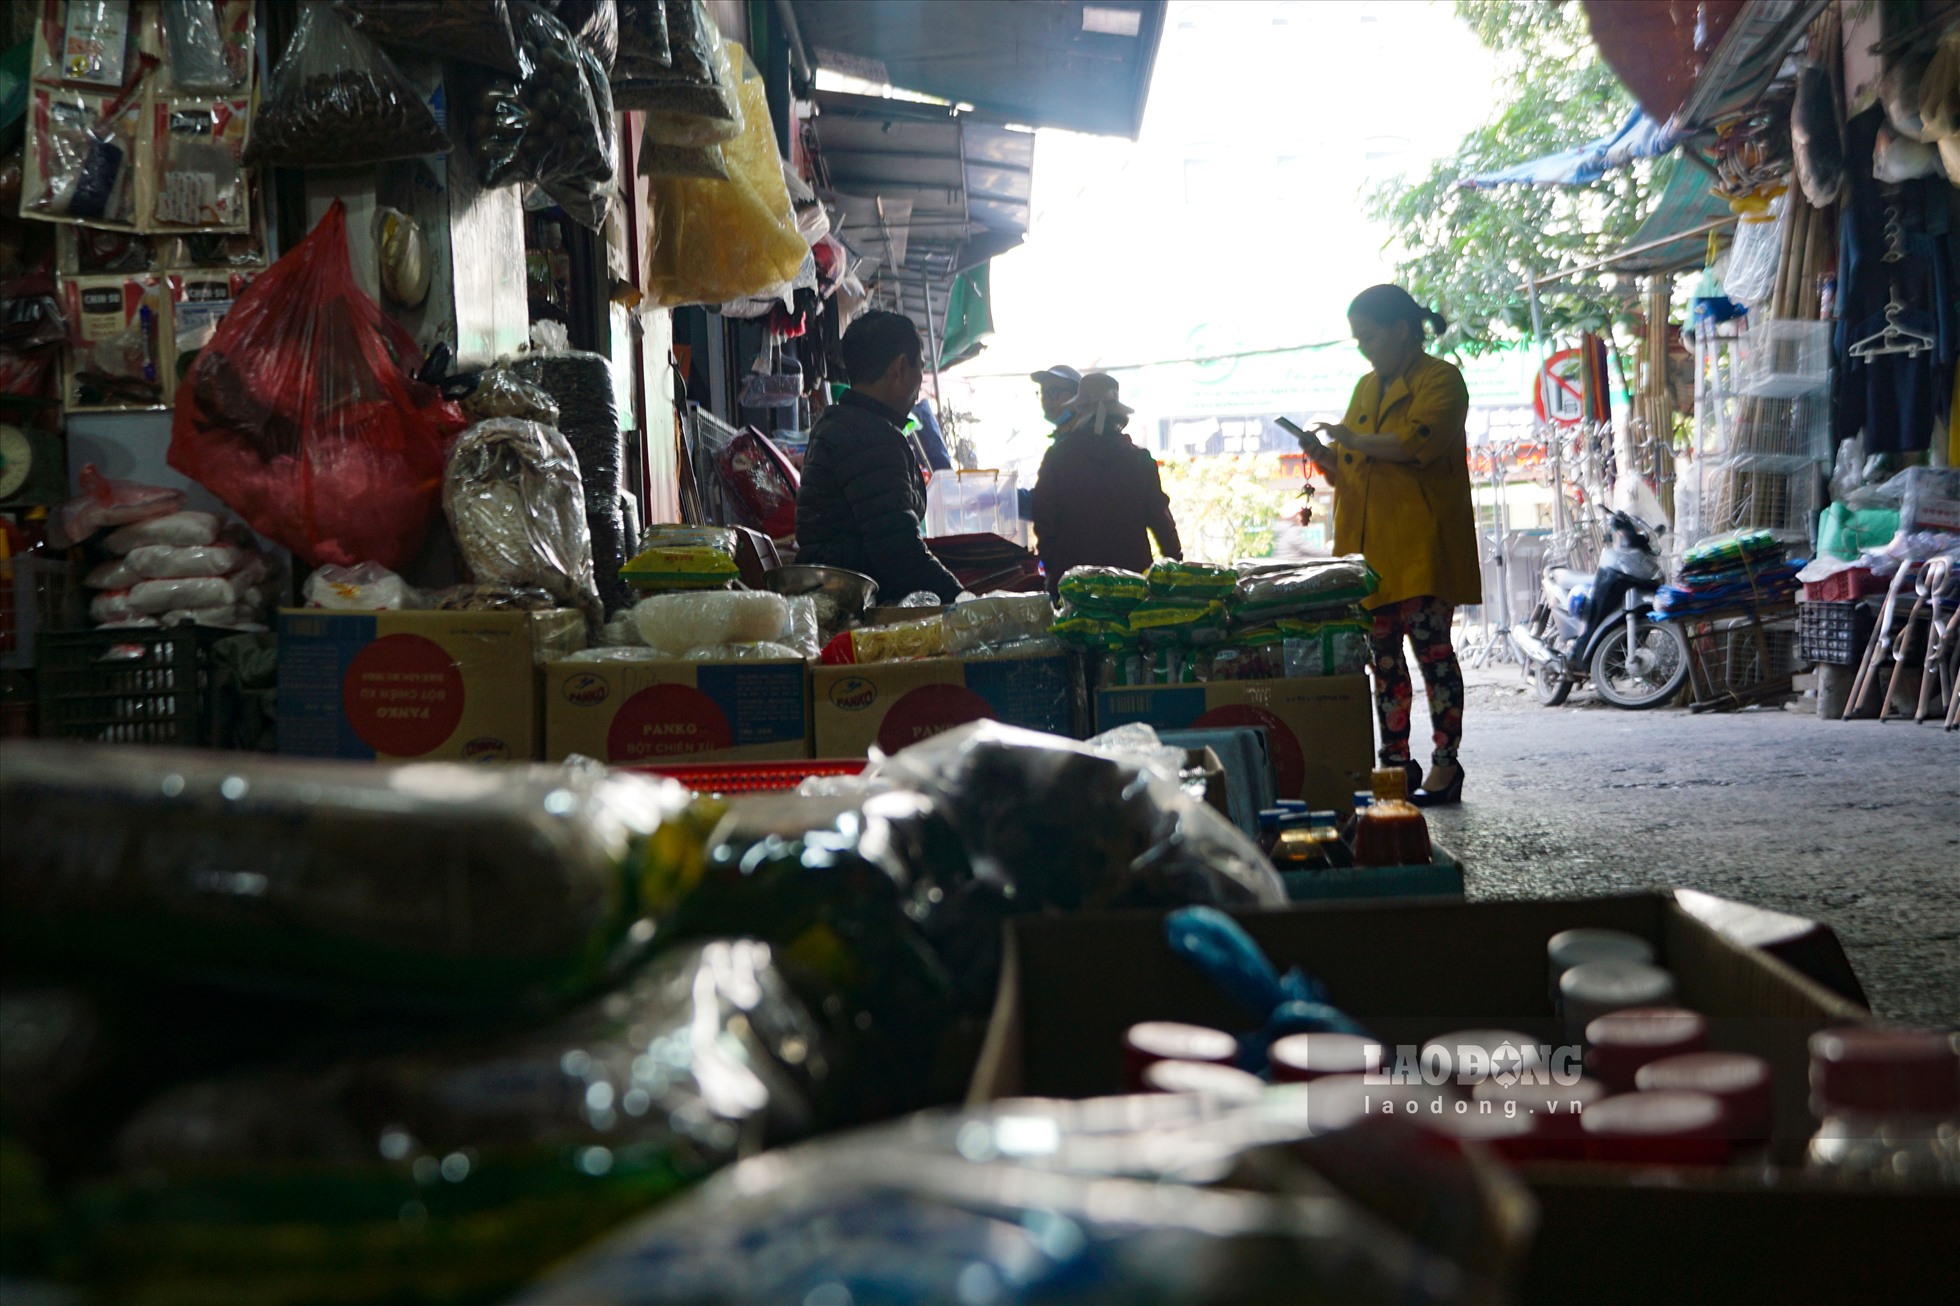 Ngày 29.1, theo ghi nhận của Lao Đông, tại tầng 1 của khu chợ, mặt hàng bày bán chủ yếu là rau xanh và đồ khô, nhưng thưa vắng người mua.